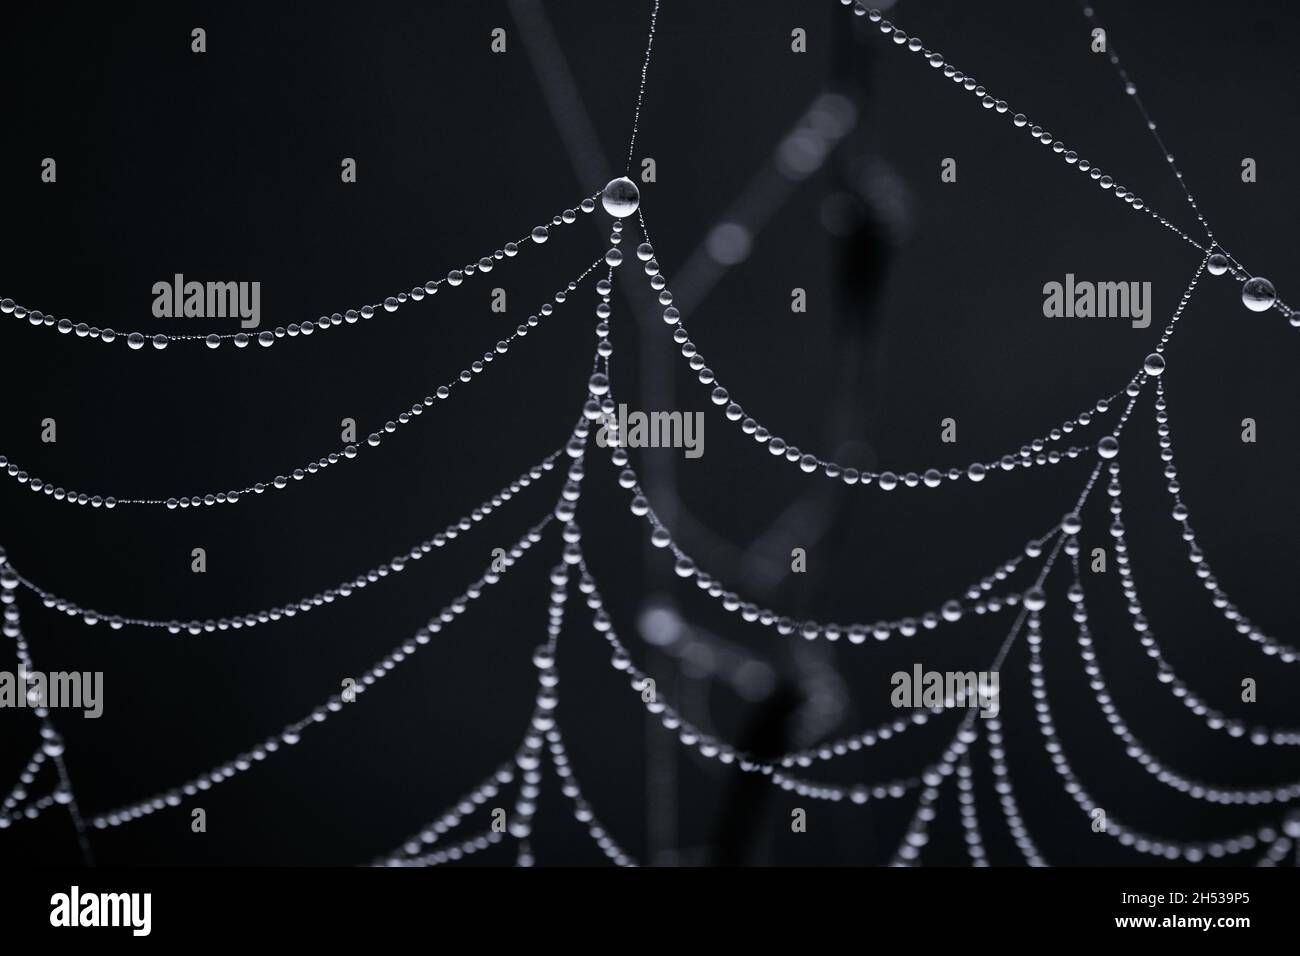 Primer plano de una tela de araña húmeda con muchas perlas pequeñas de gotas de rocío. Foto de stock